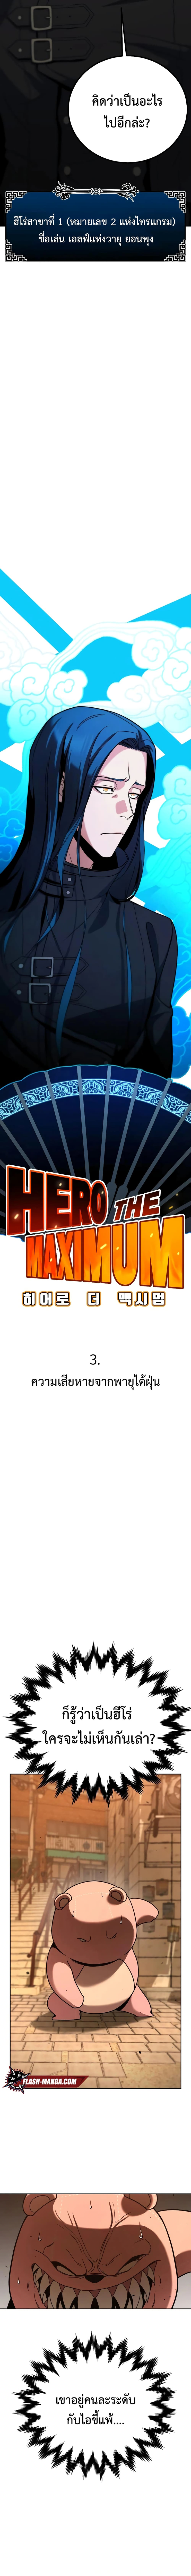 Hero the Maximum ตอนที่ 3 (3)